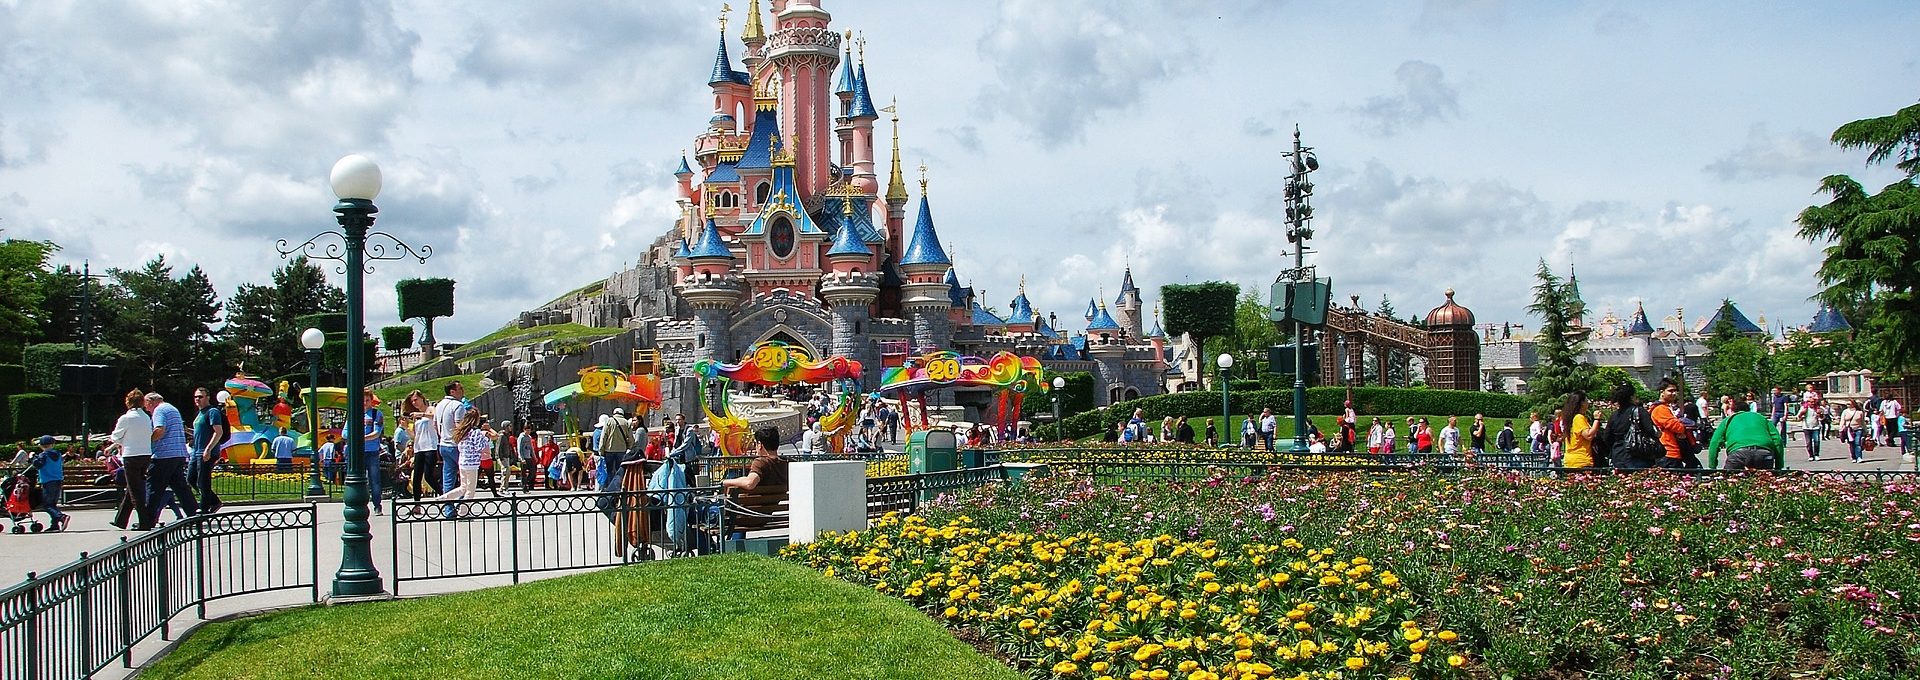 Vista de castelo na Disneyland em Paris